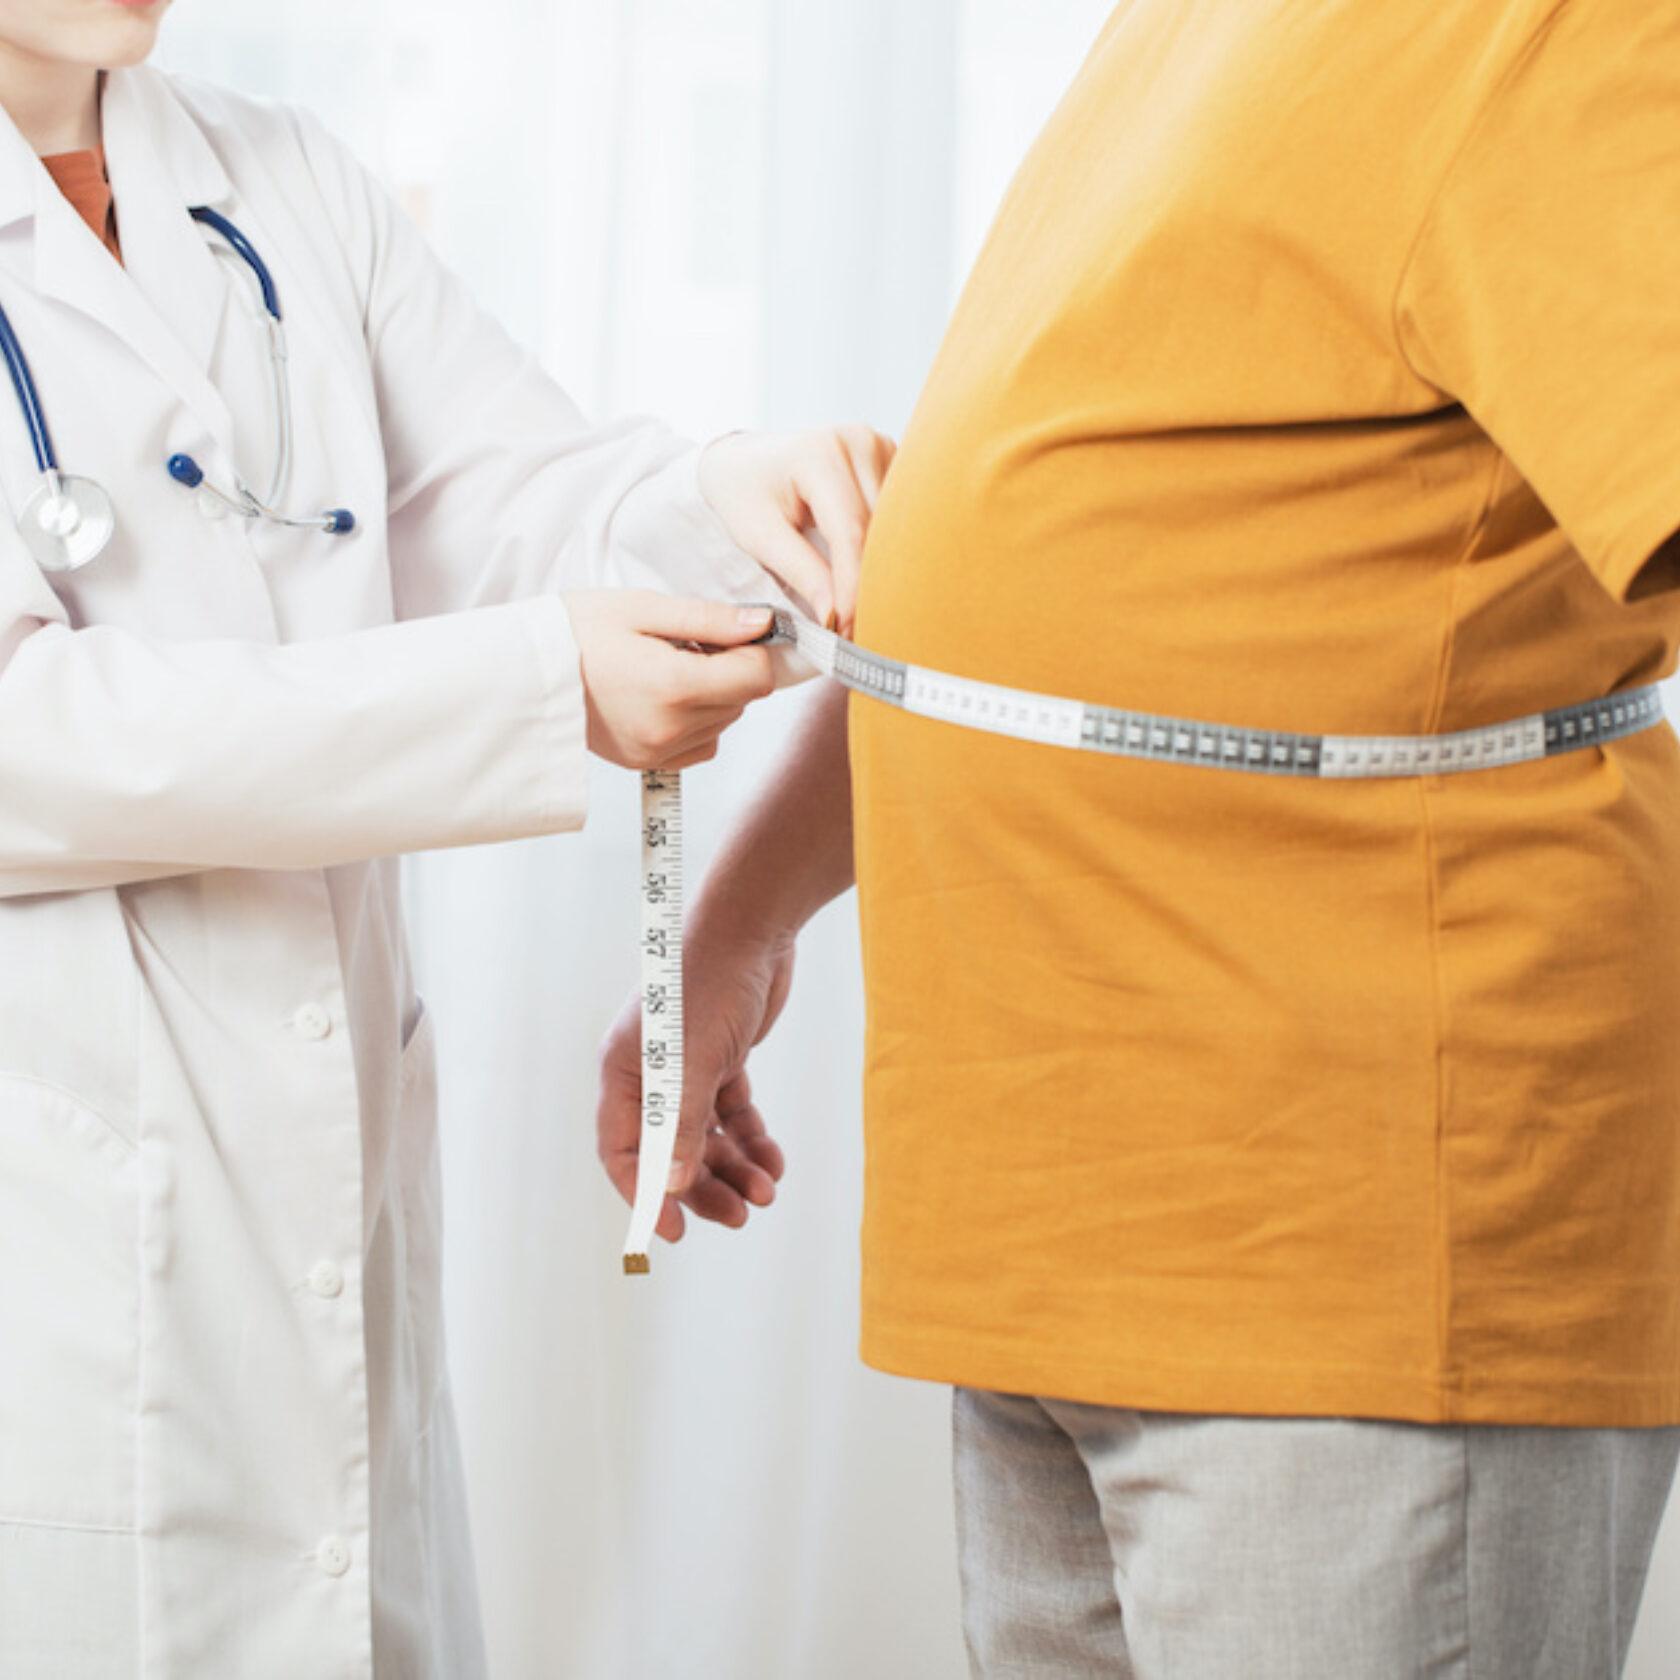 Messung des Bauchumfangs bei Adipositas-Patient in durch Arzt